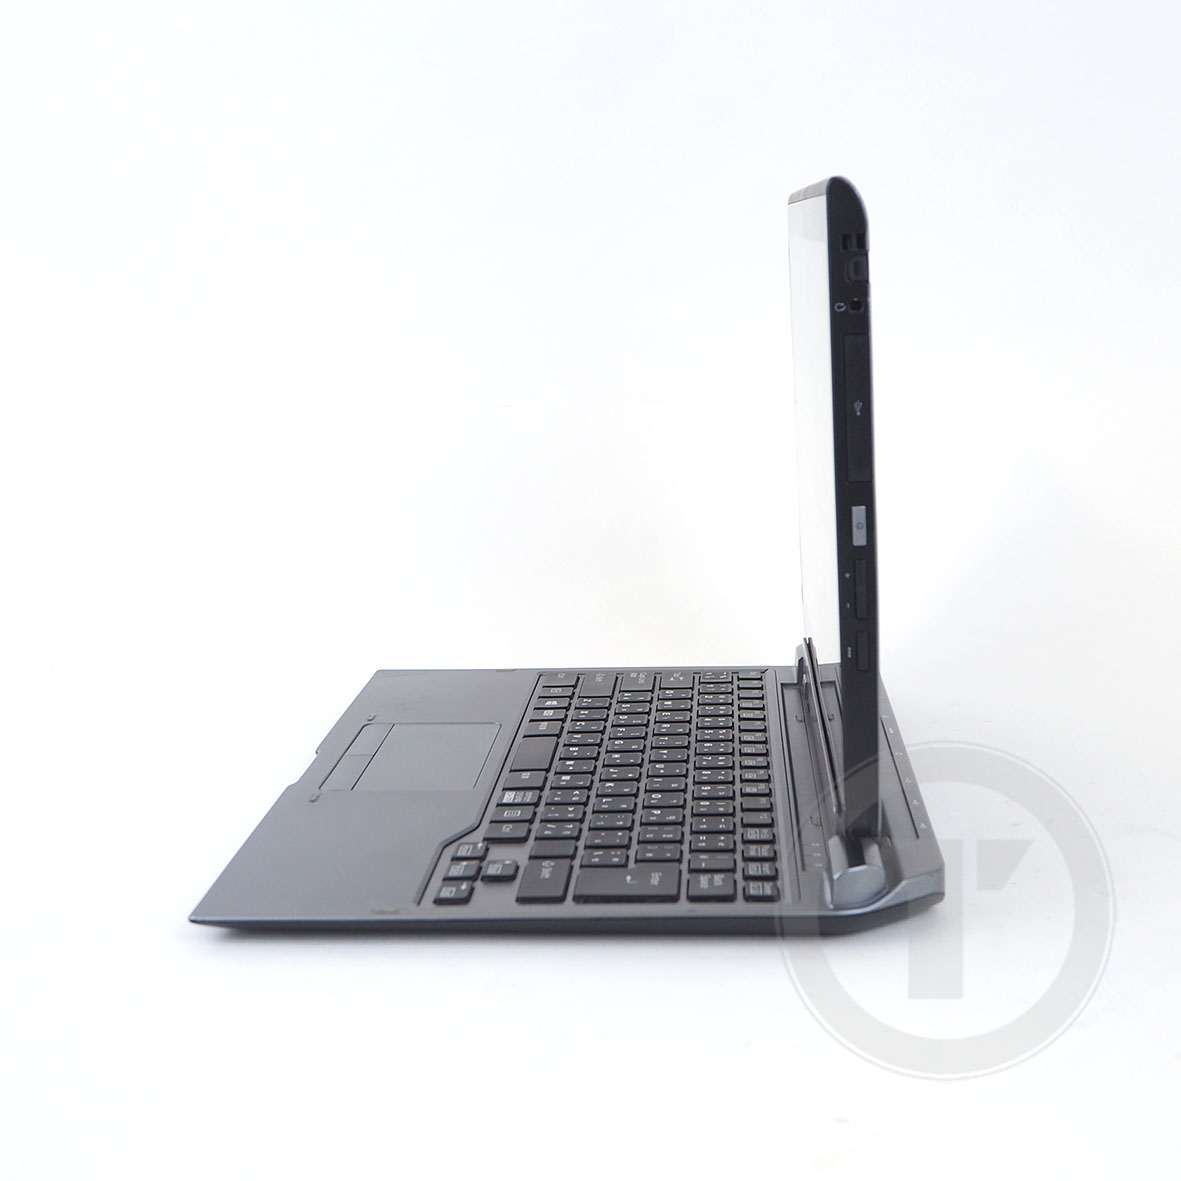 รูปภาพเพิ่มเติมของ โน๊ตบุ๊ค/แท็บเล็ต 2 in 1 Fu Stylistic Q737/P Core i5-7300U RAM 4GB SSD 128GB /HDMI /WiFi /Blth /จอ 13.3” LED Full-HD ถอดจอได้ windows tablet Used laptop Refhed computer 2022 มีประกัน By Totalsol